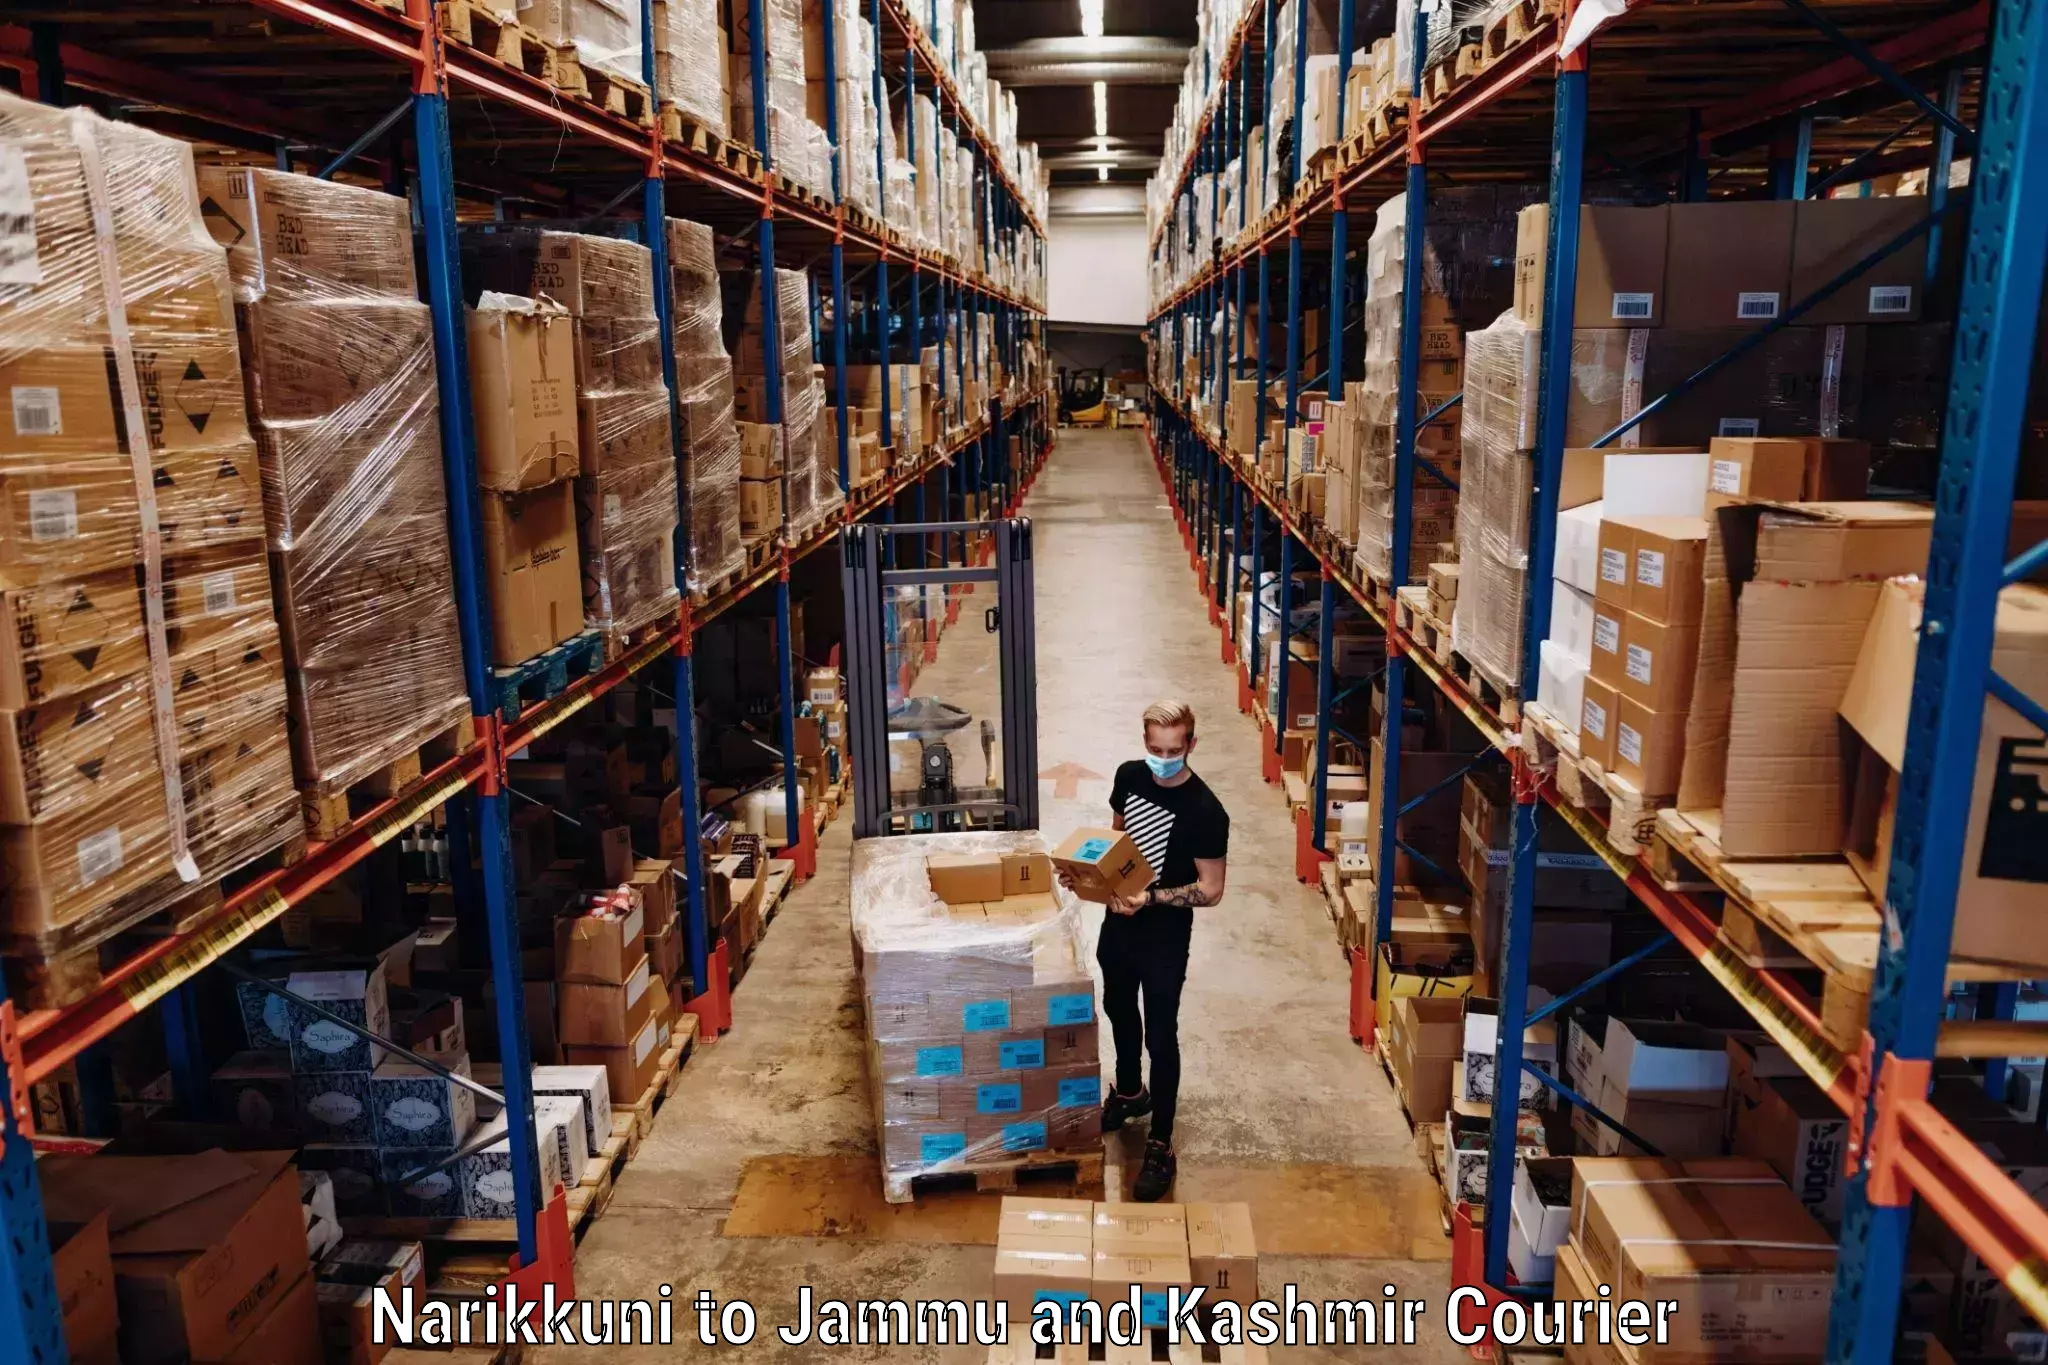 Luggage delivery network Narikkuni to University of Jammu